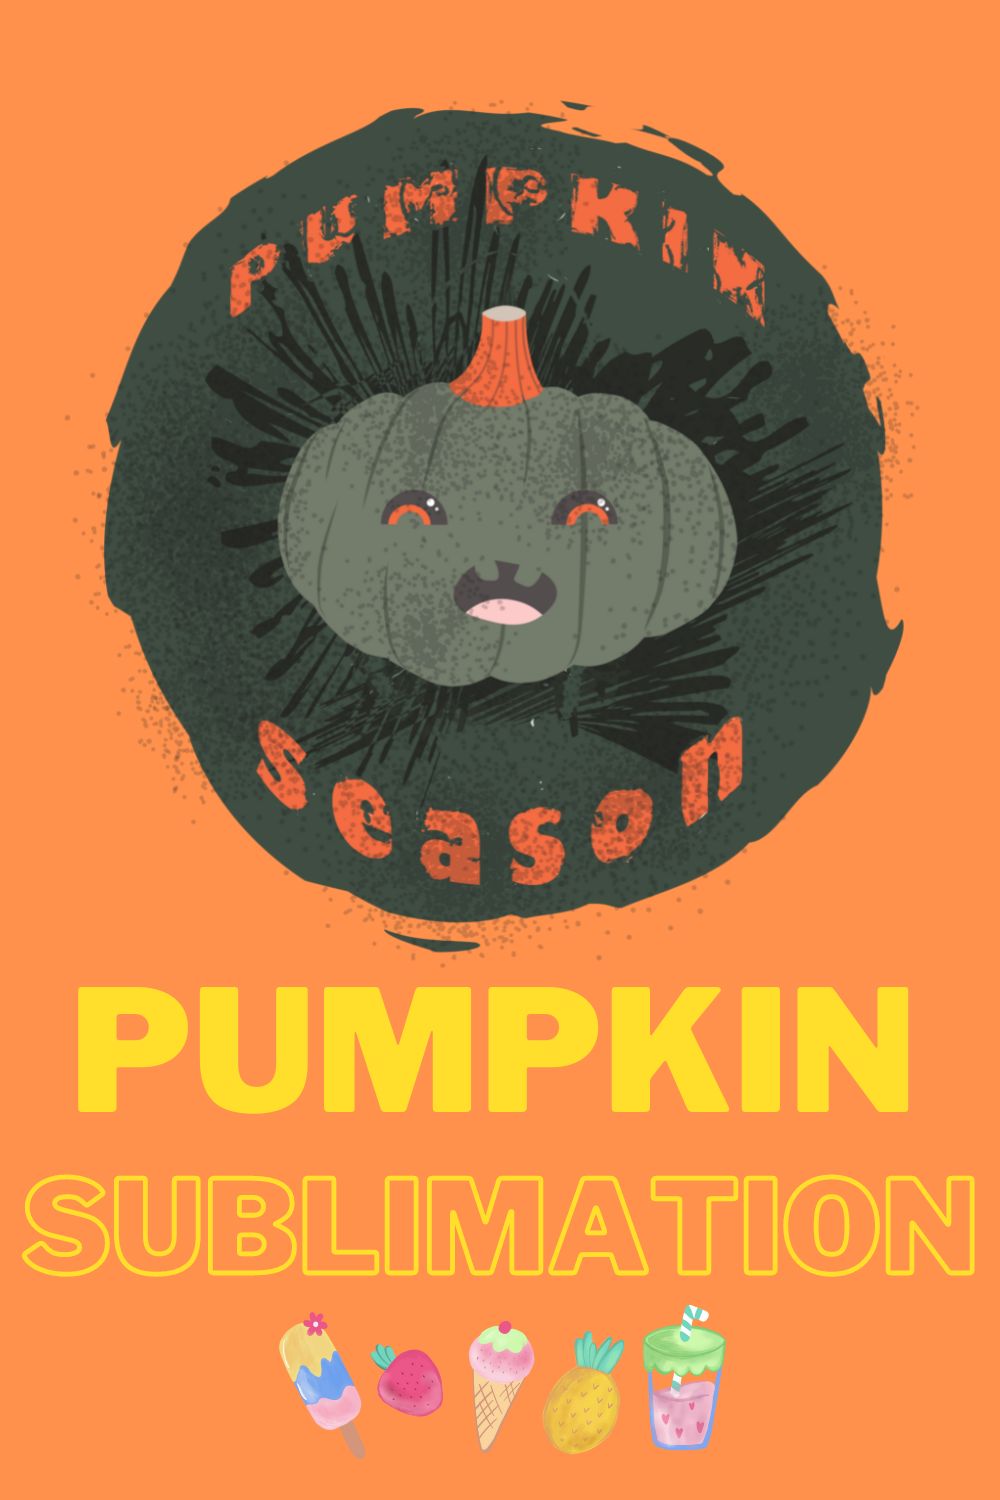 Halloween Pumpkin Season Sublimation pinterest image.